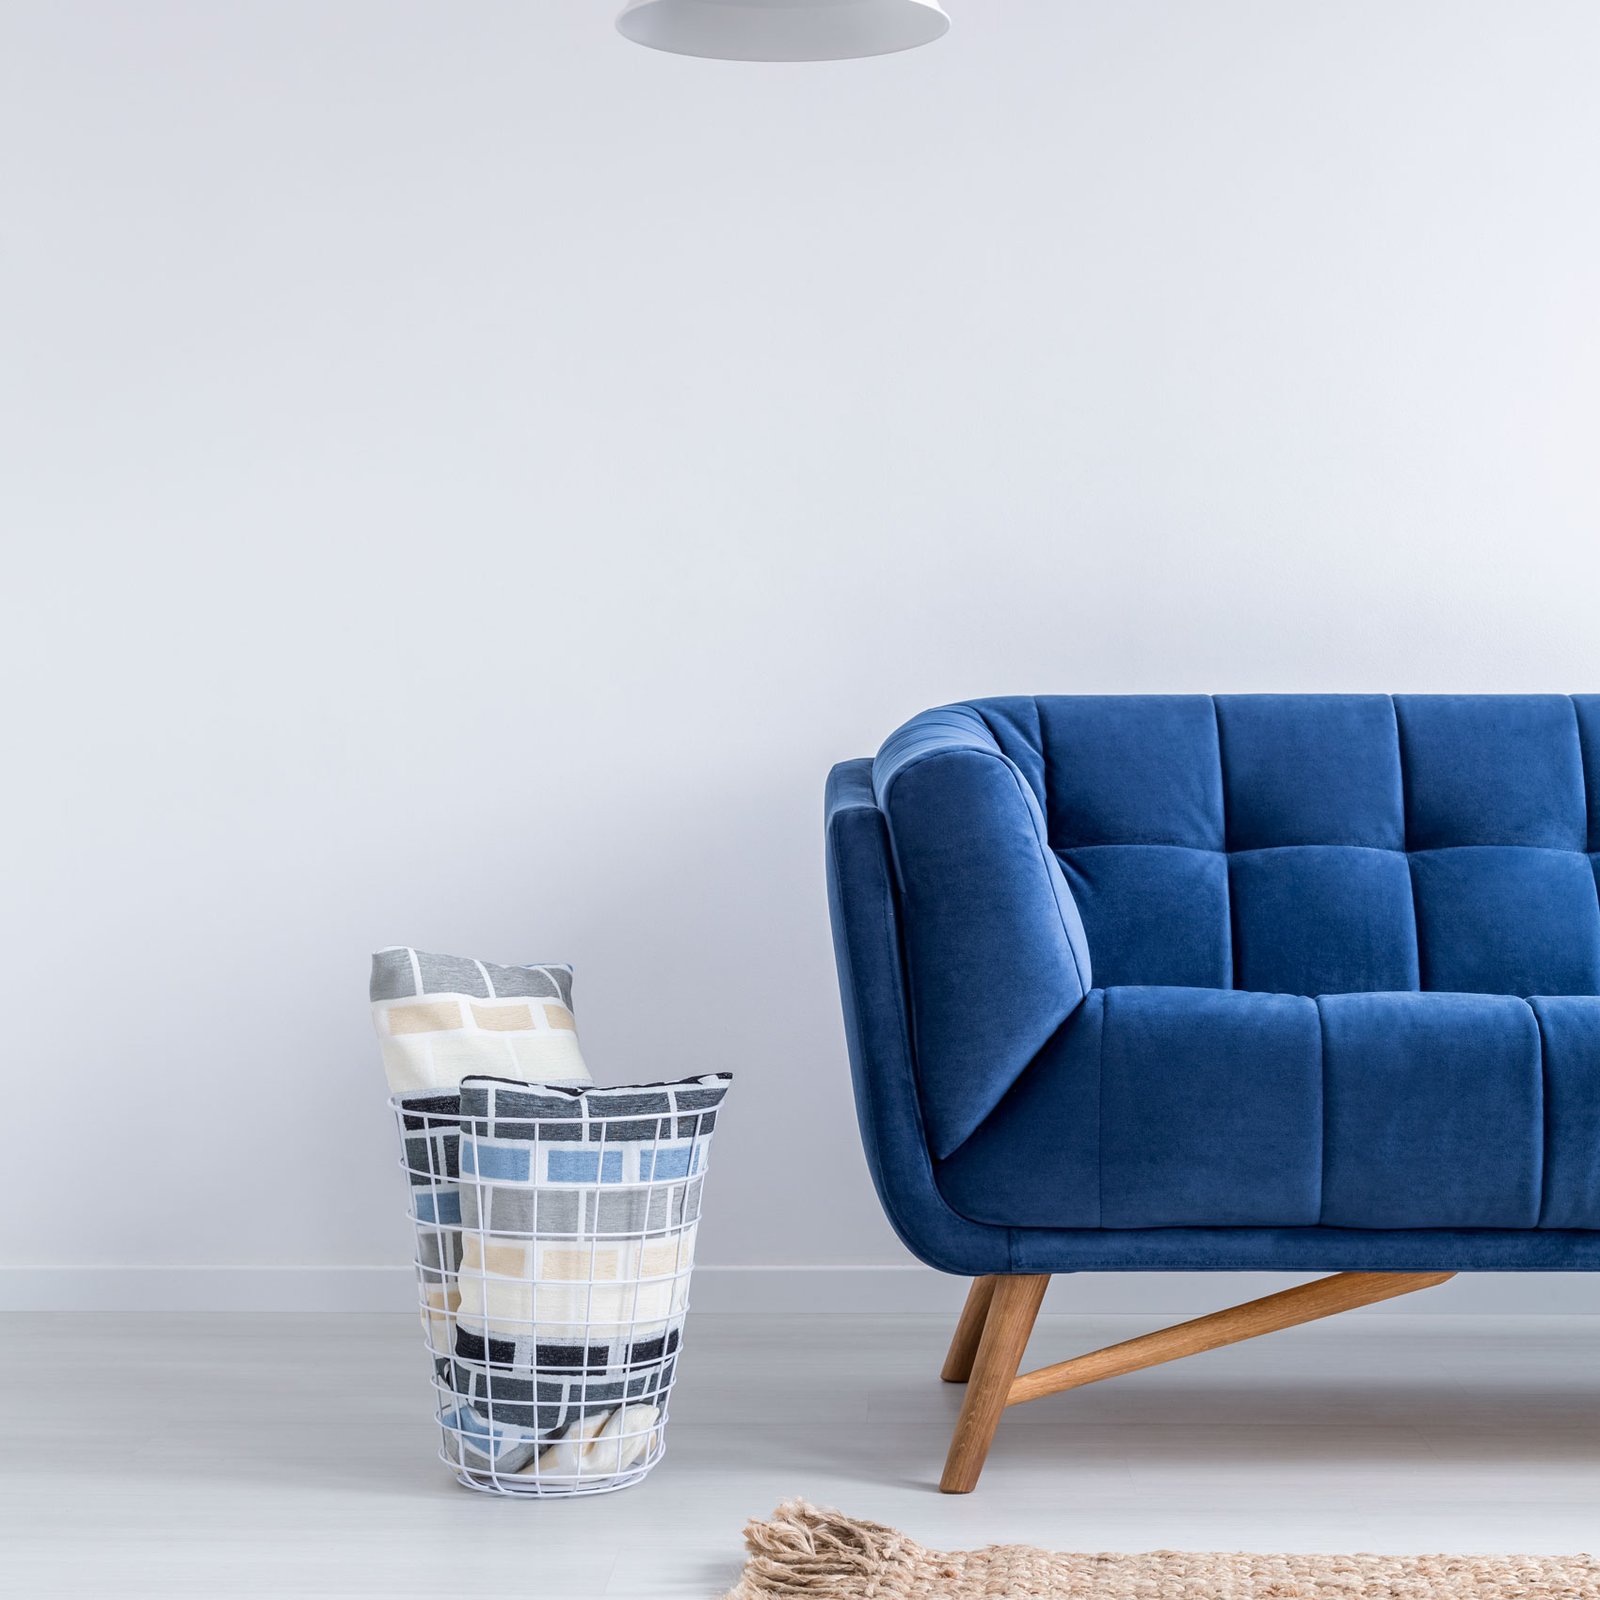 minimalist-room-with-sofa-2021-08-26-15-43-52-utc.jpg